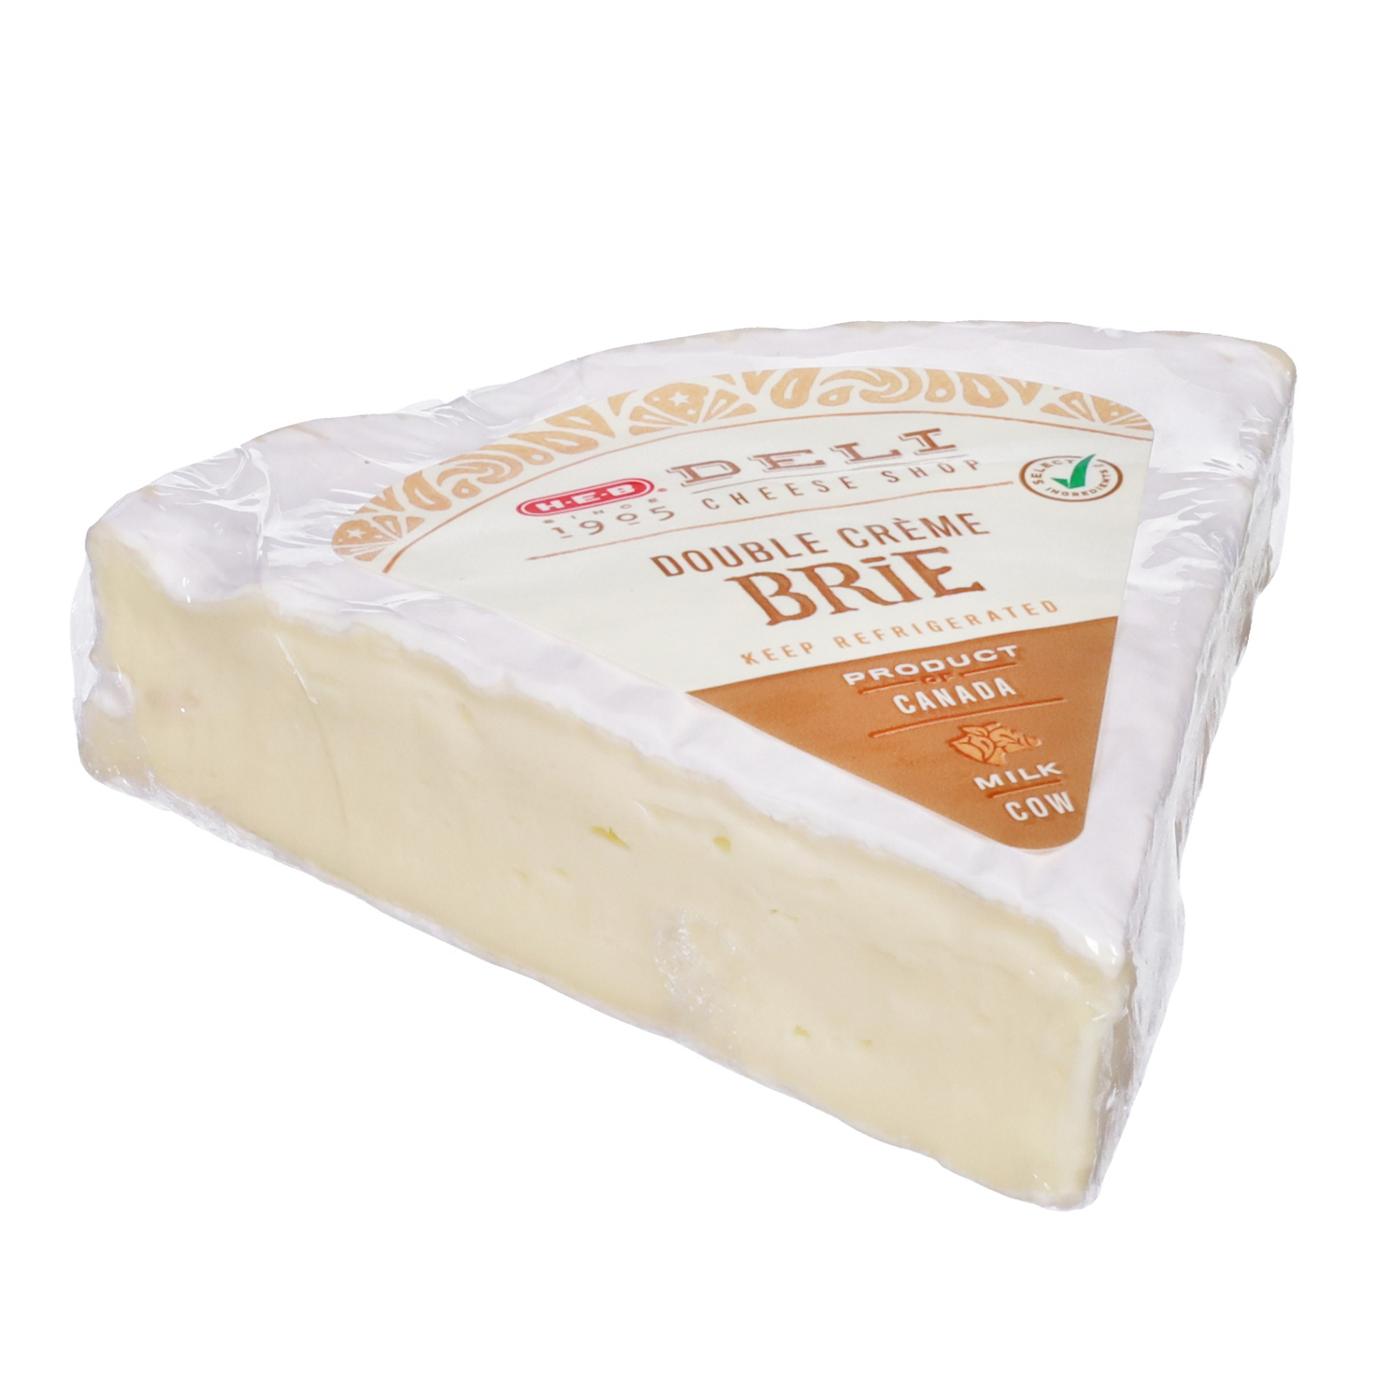 H-E-B Deli Double Creme Brie Cheese - Fresh Cut; image 1 of 2